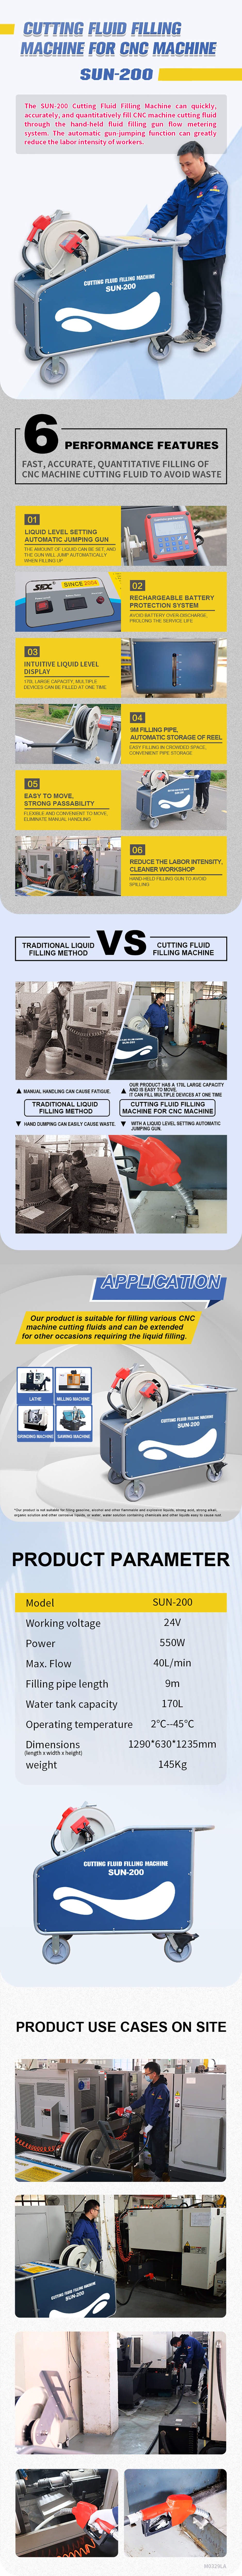 SFX SUN-200 Cutting Fluid Filling Machine for CNC Machine SFX SUN-200 Cutting Fluid Filling Machine for CNC Machine